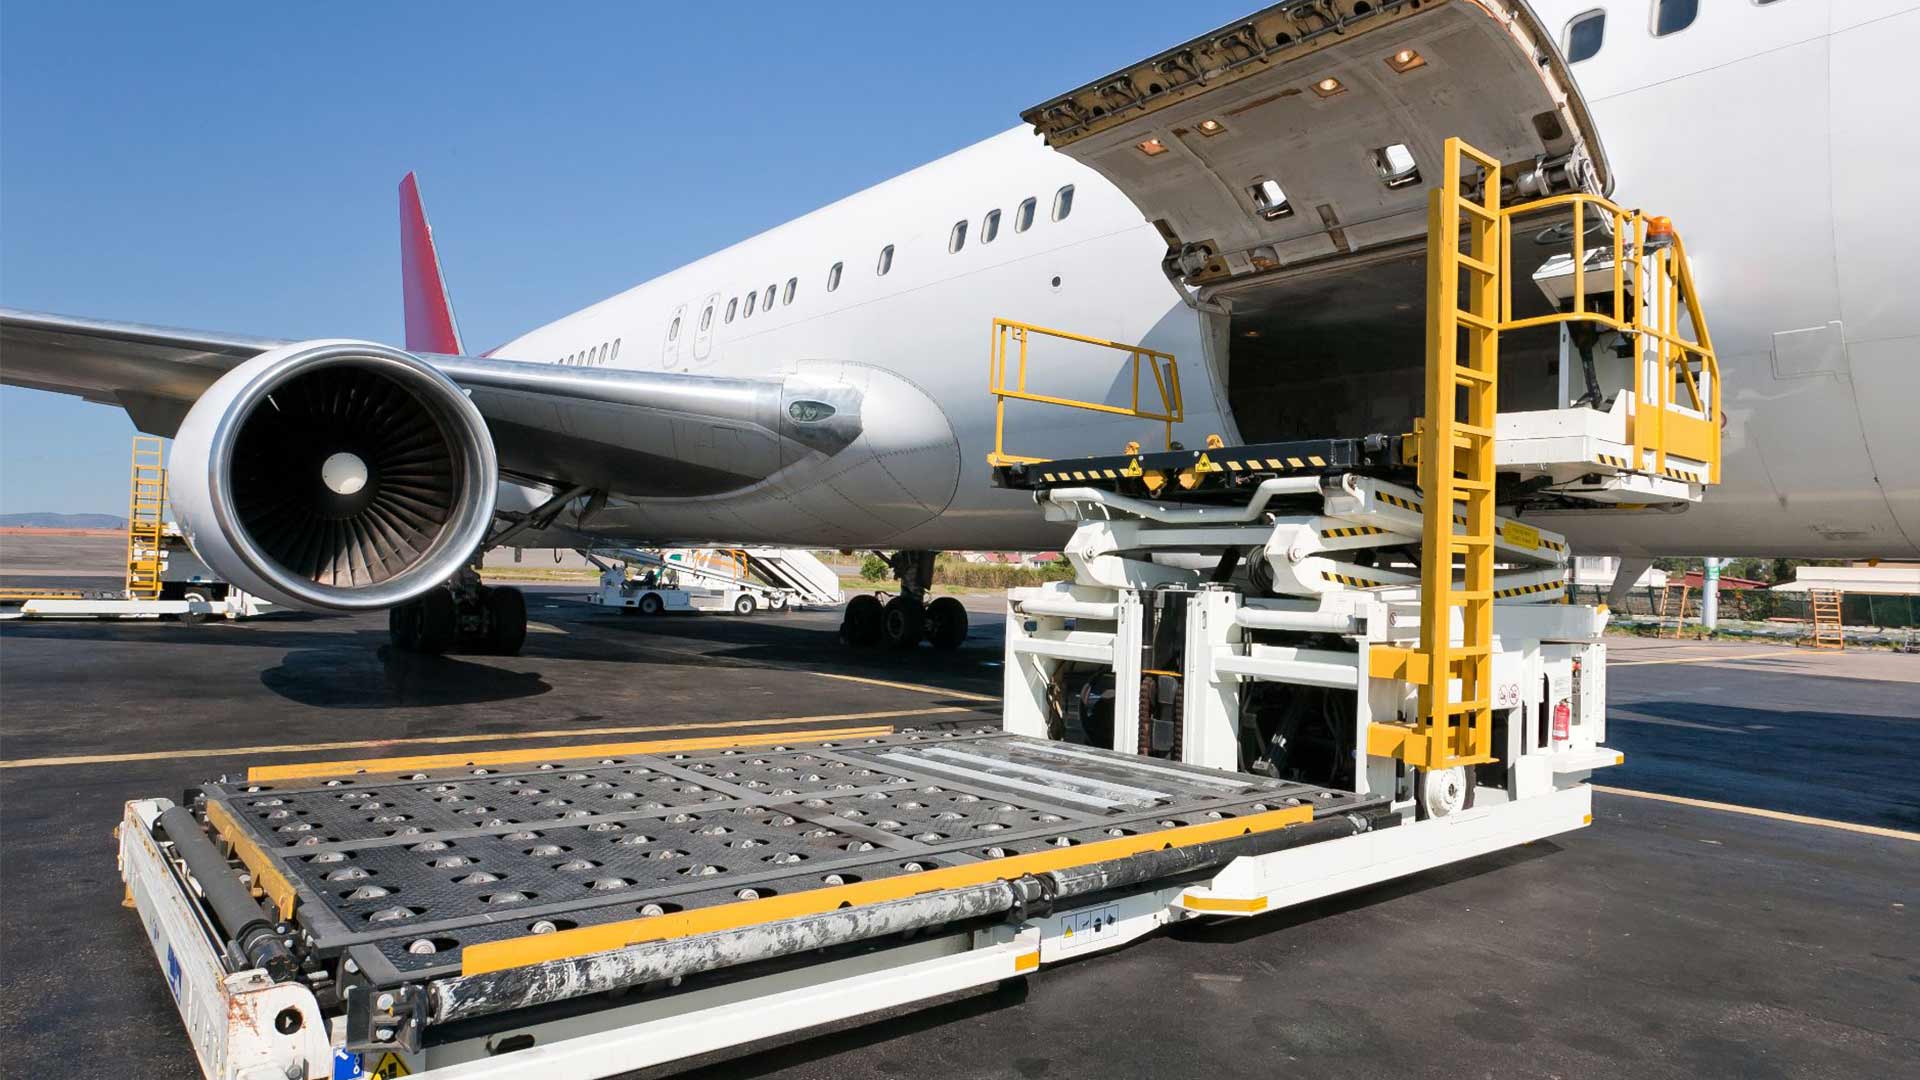 حمل و نقل هوایی: کلید توسعه سریع و کارآمد جابجایی